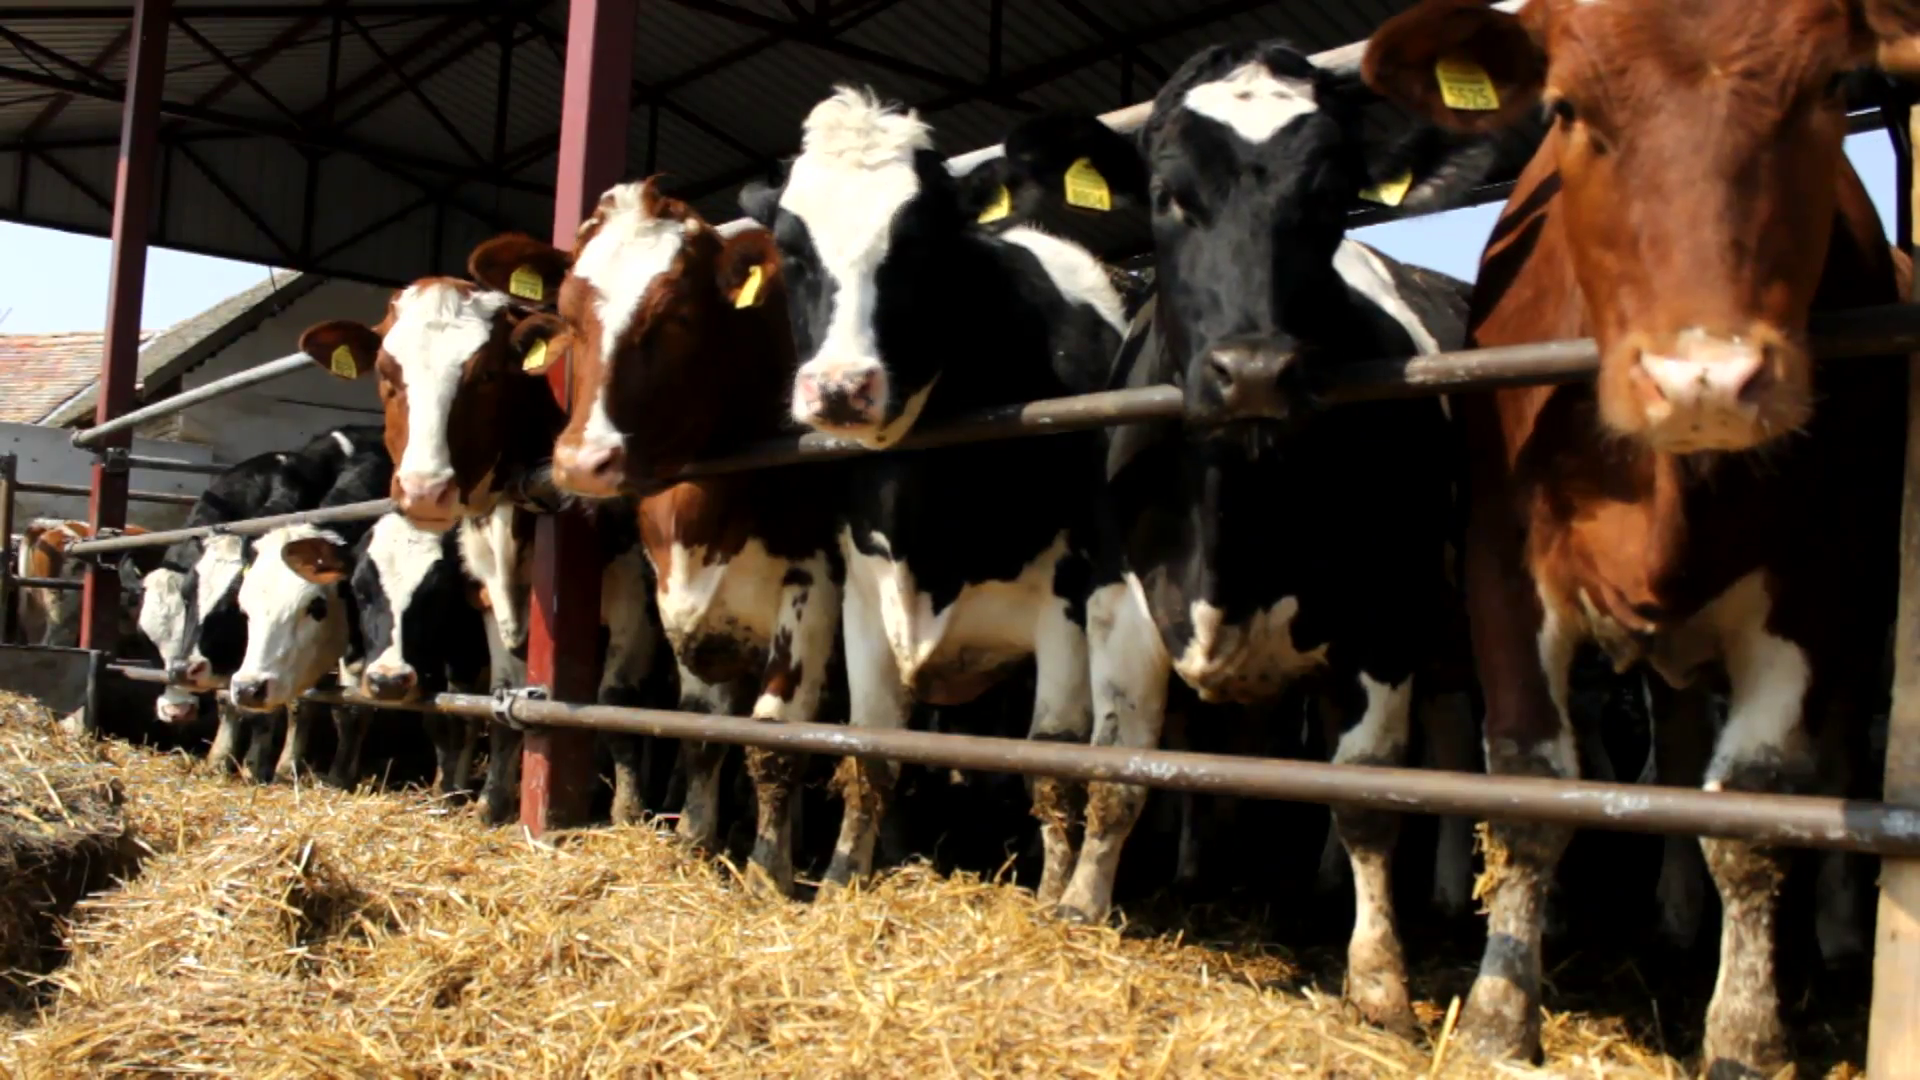 Cattle farm in Ranch Stock Video Footage - VideoBlocks